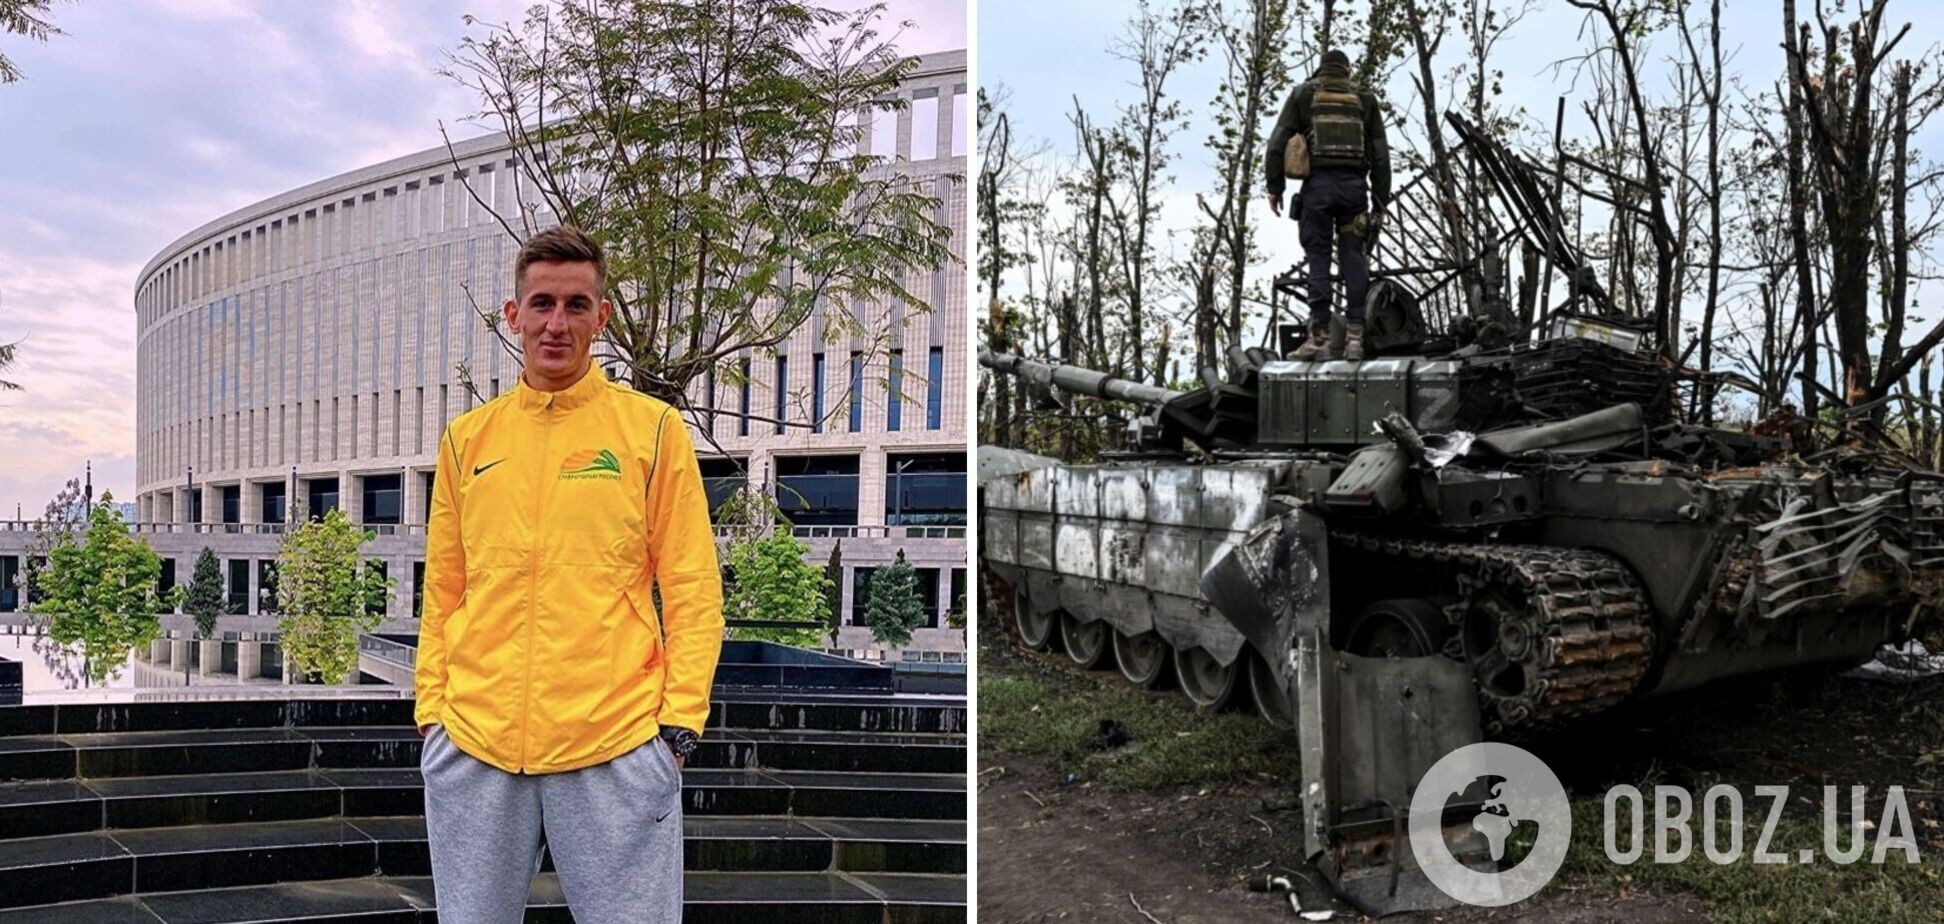 'Жду. Готов. Мое желание ничего не стоит': российский футболист высказался о мобилизации и войне в Украине